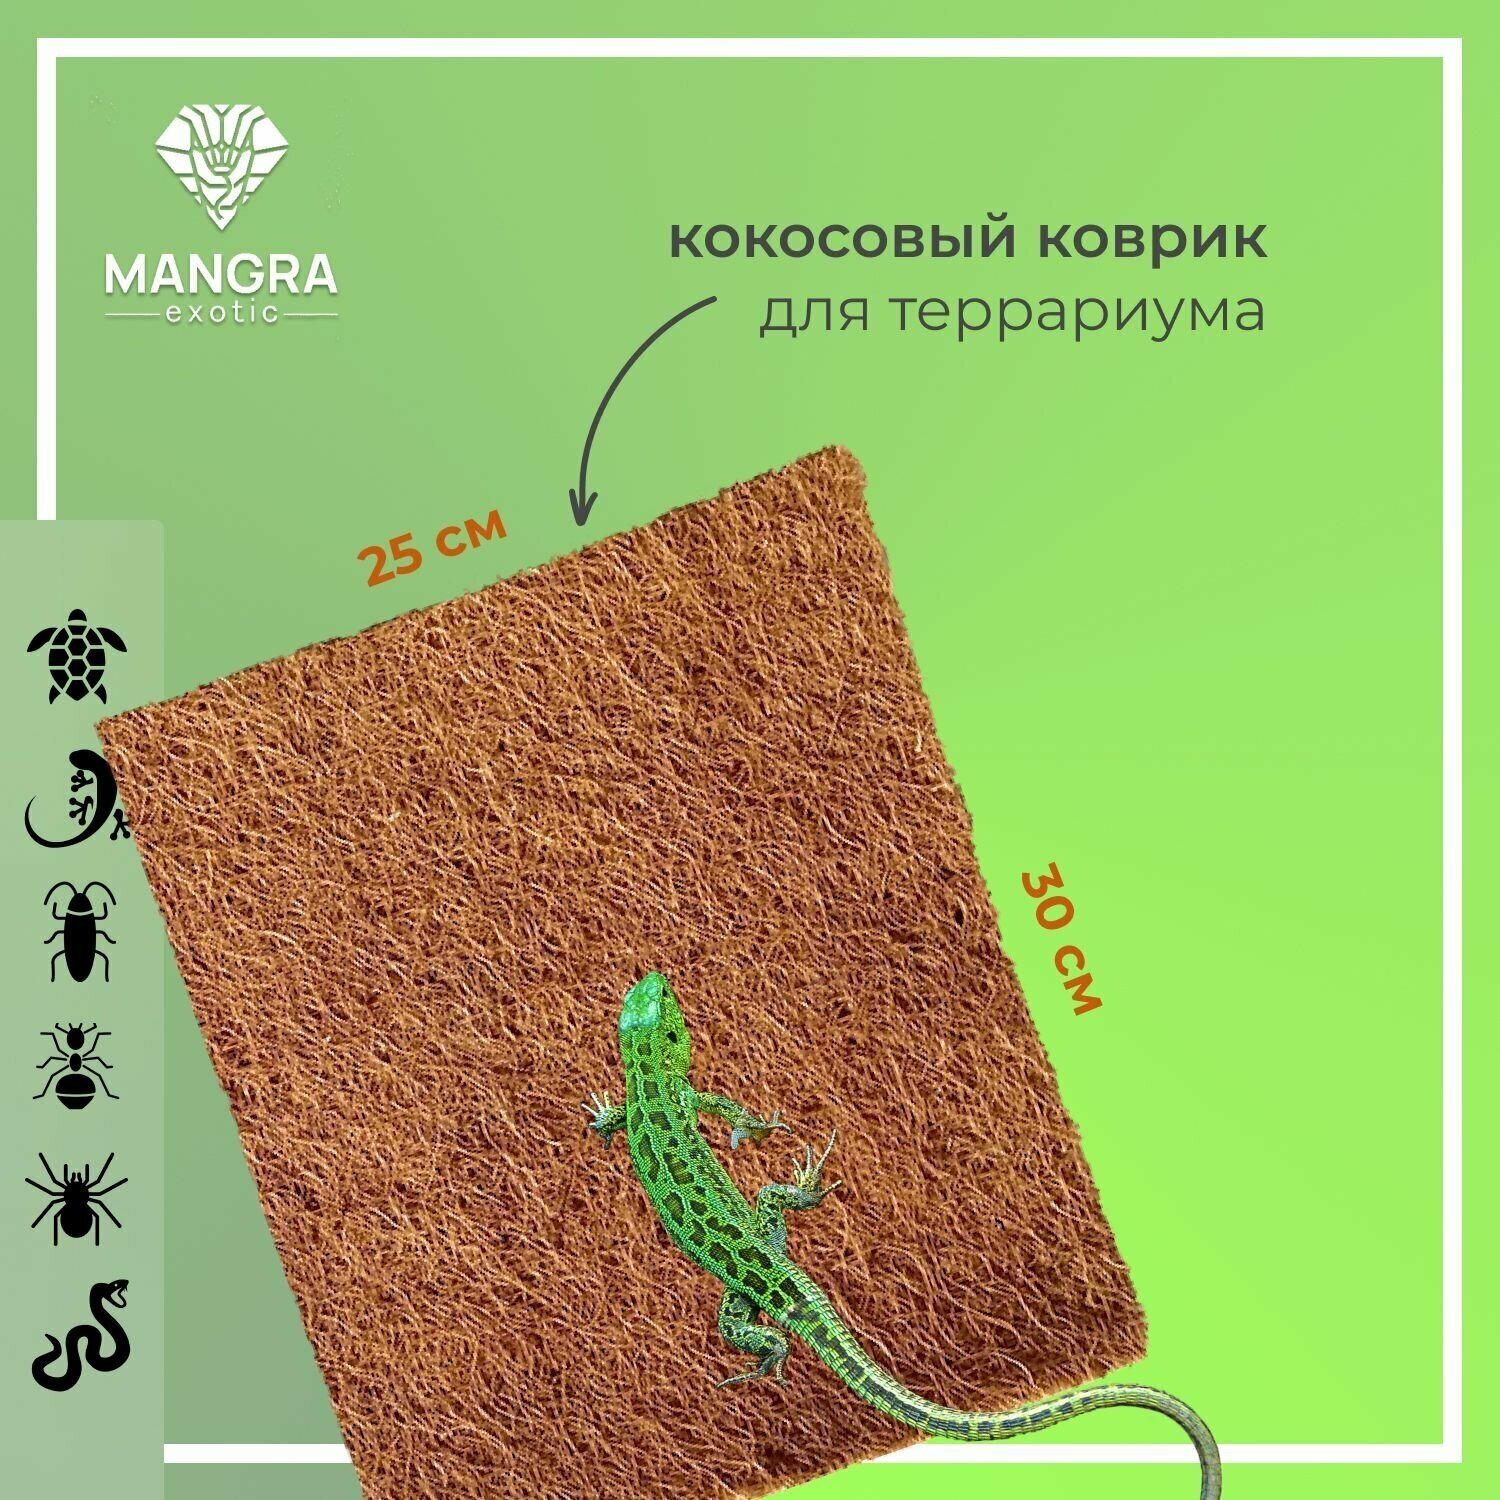 Кокосовый коврик MANGRA exotic для террариума для рептилий